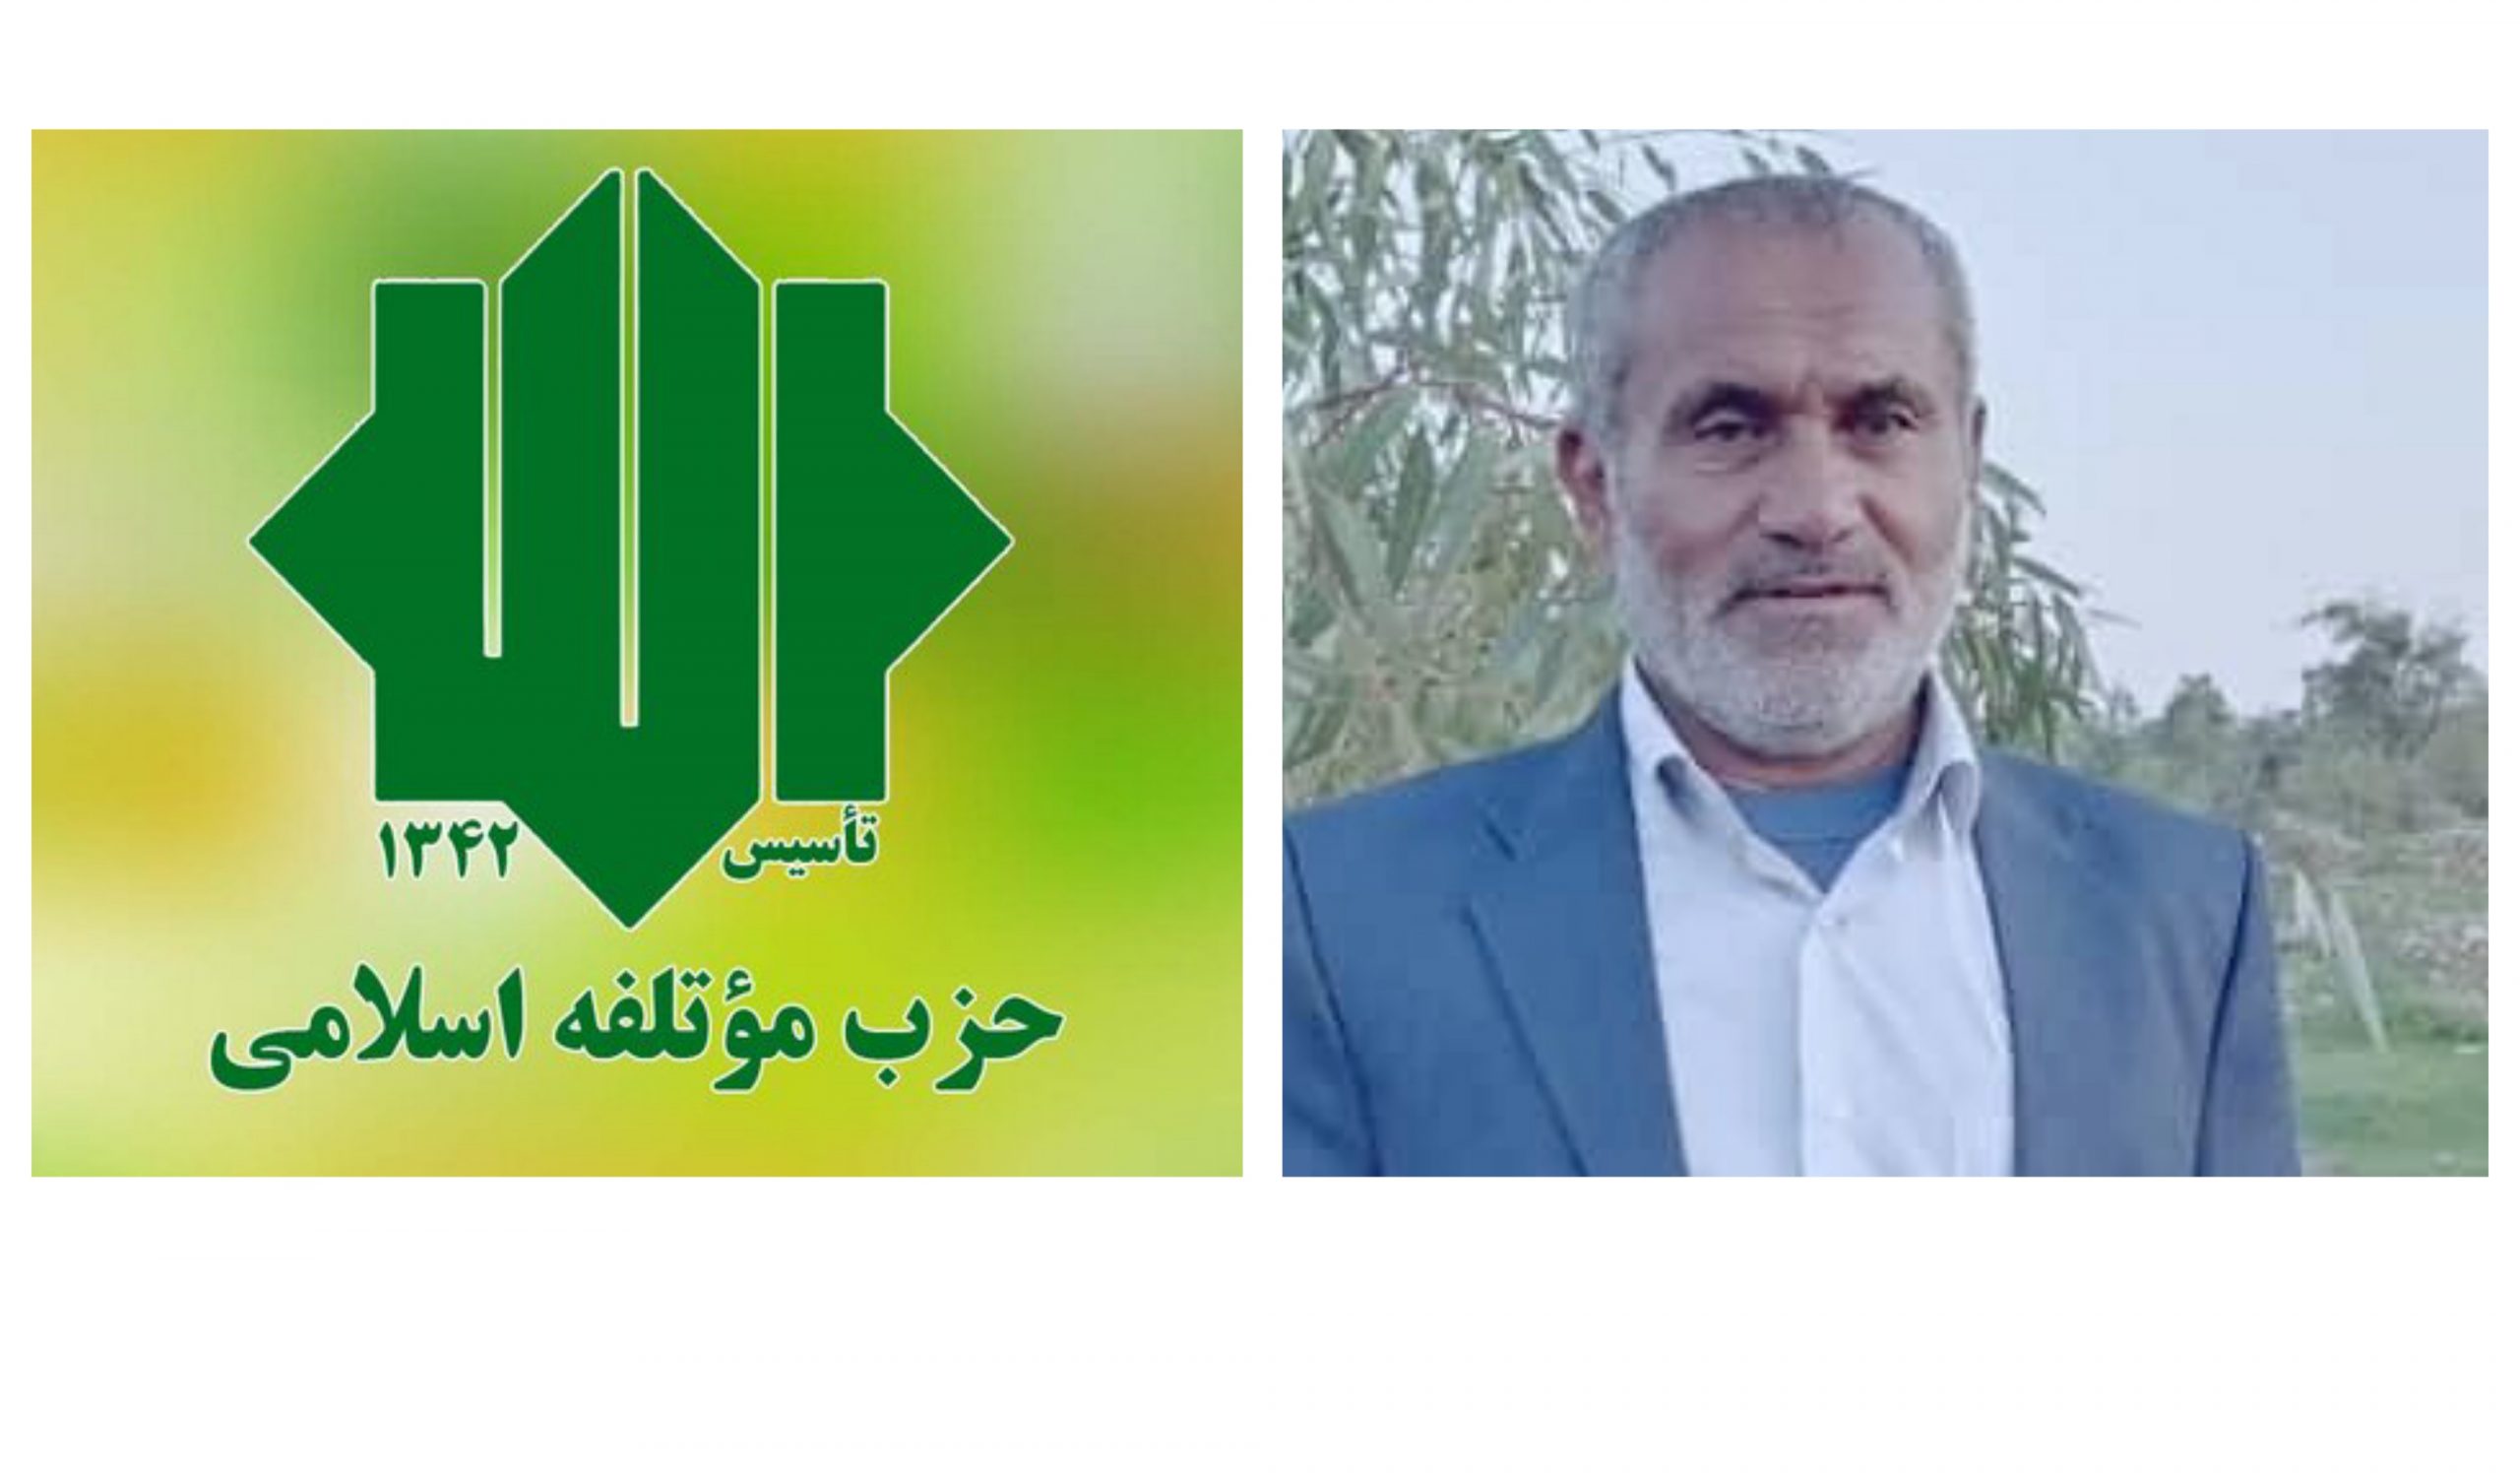 پیوستن اکثریت اعضای حزب موتلفه اسلامی در شهرستان بهمئی به سید محمد موحد